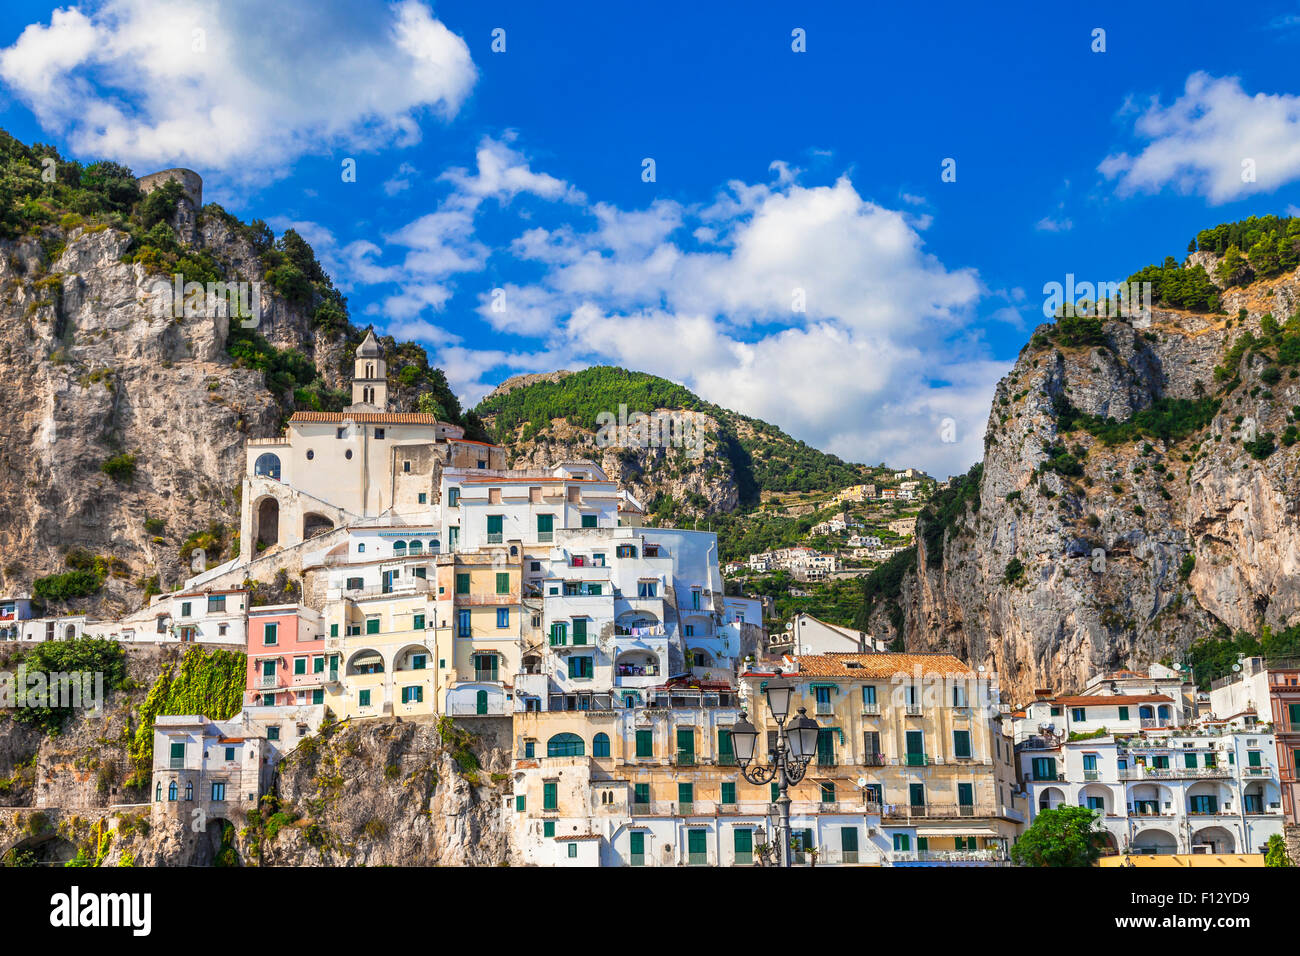 Viaje a Italia - Amalfi pictórica Foto de stock